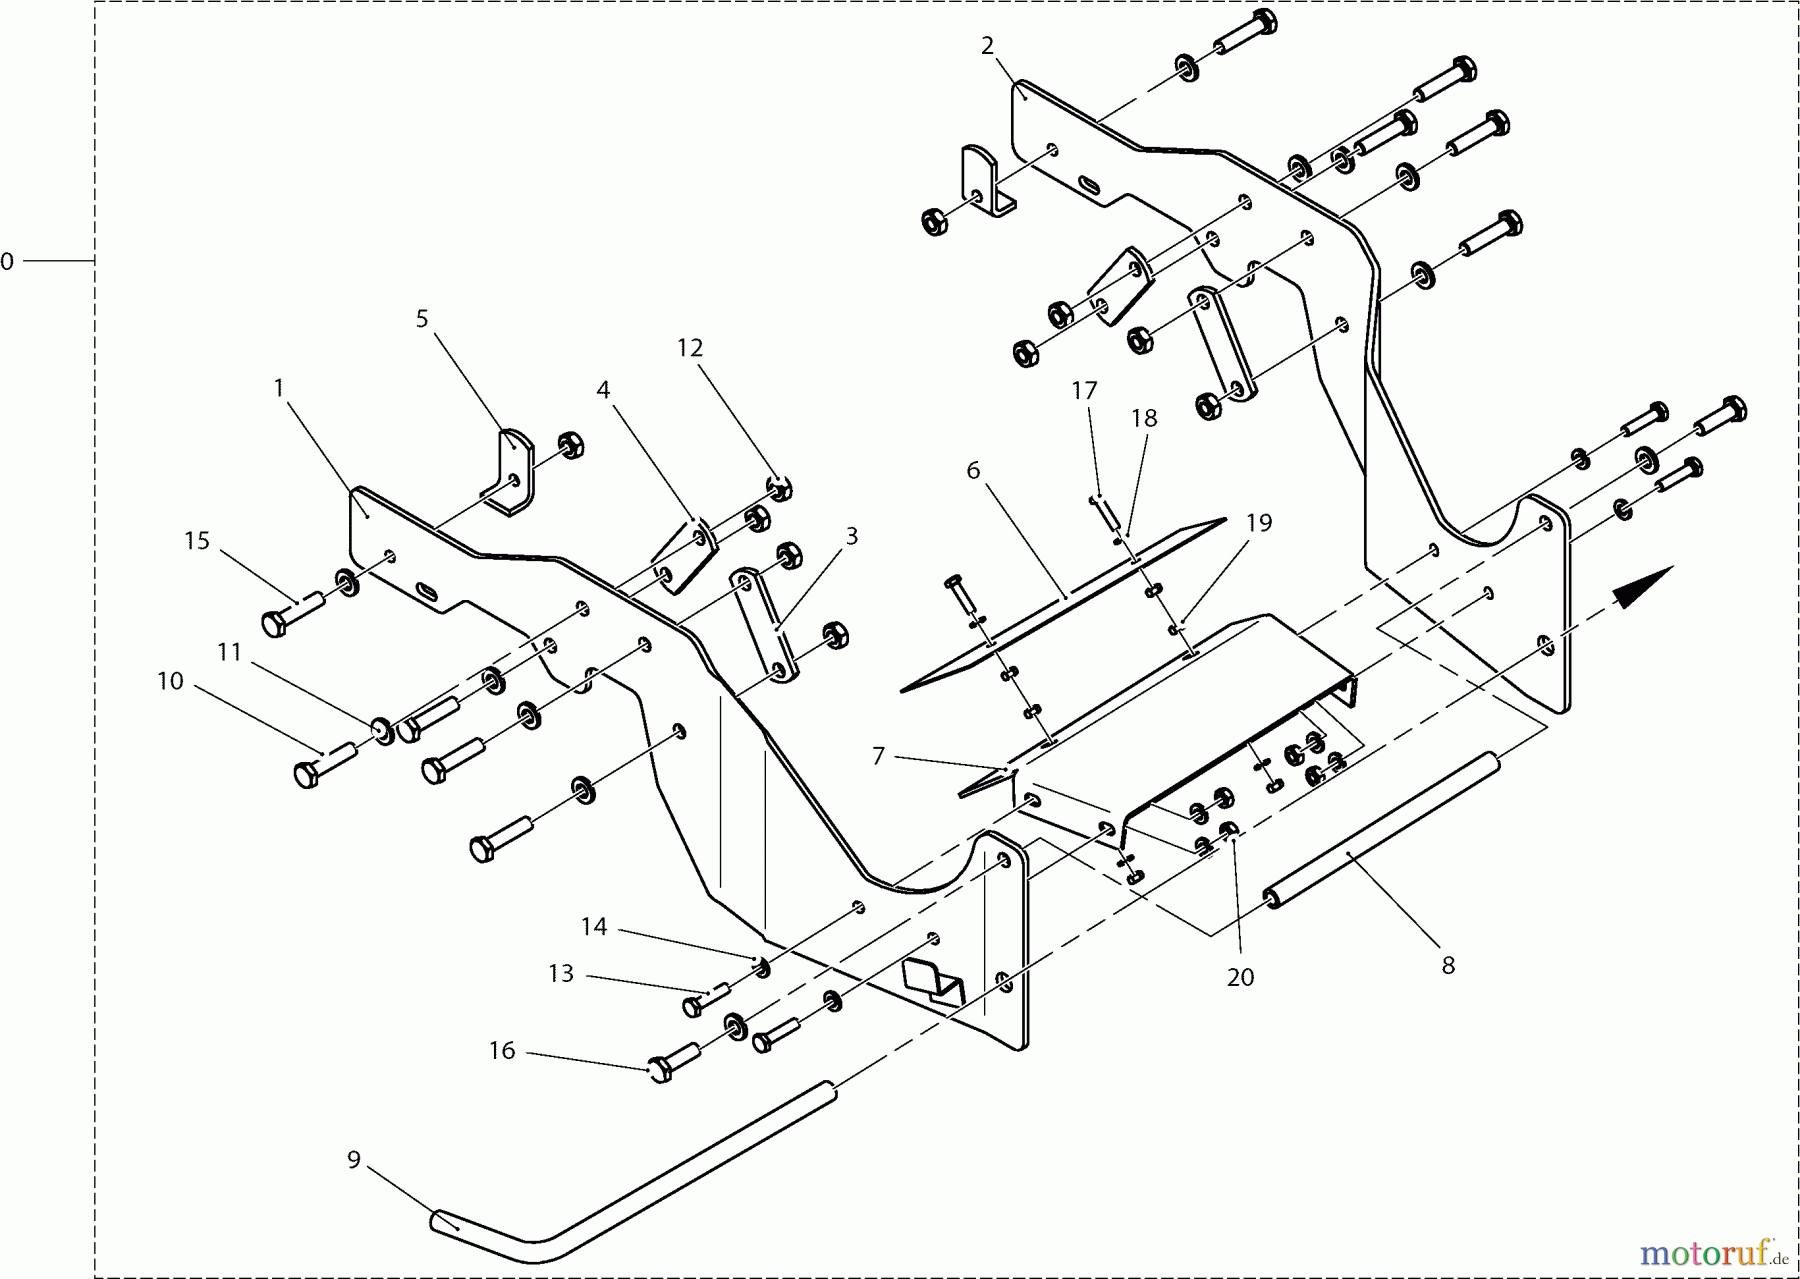  Dolmar Rasentraktoren Zubehör RS-120, TA-250, TK-420, TK-520, TS-125 1  Anbaurahmen (Basiswechsler) 92 cm